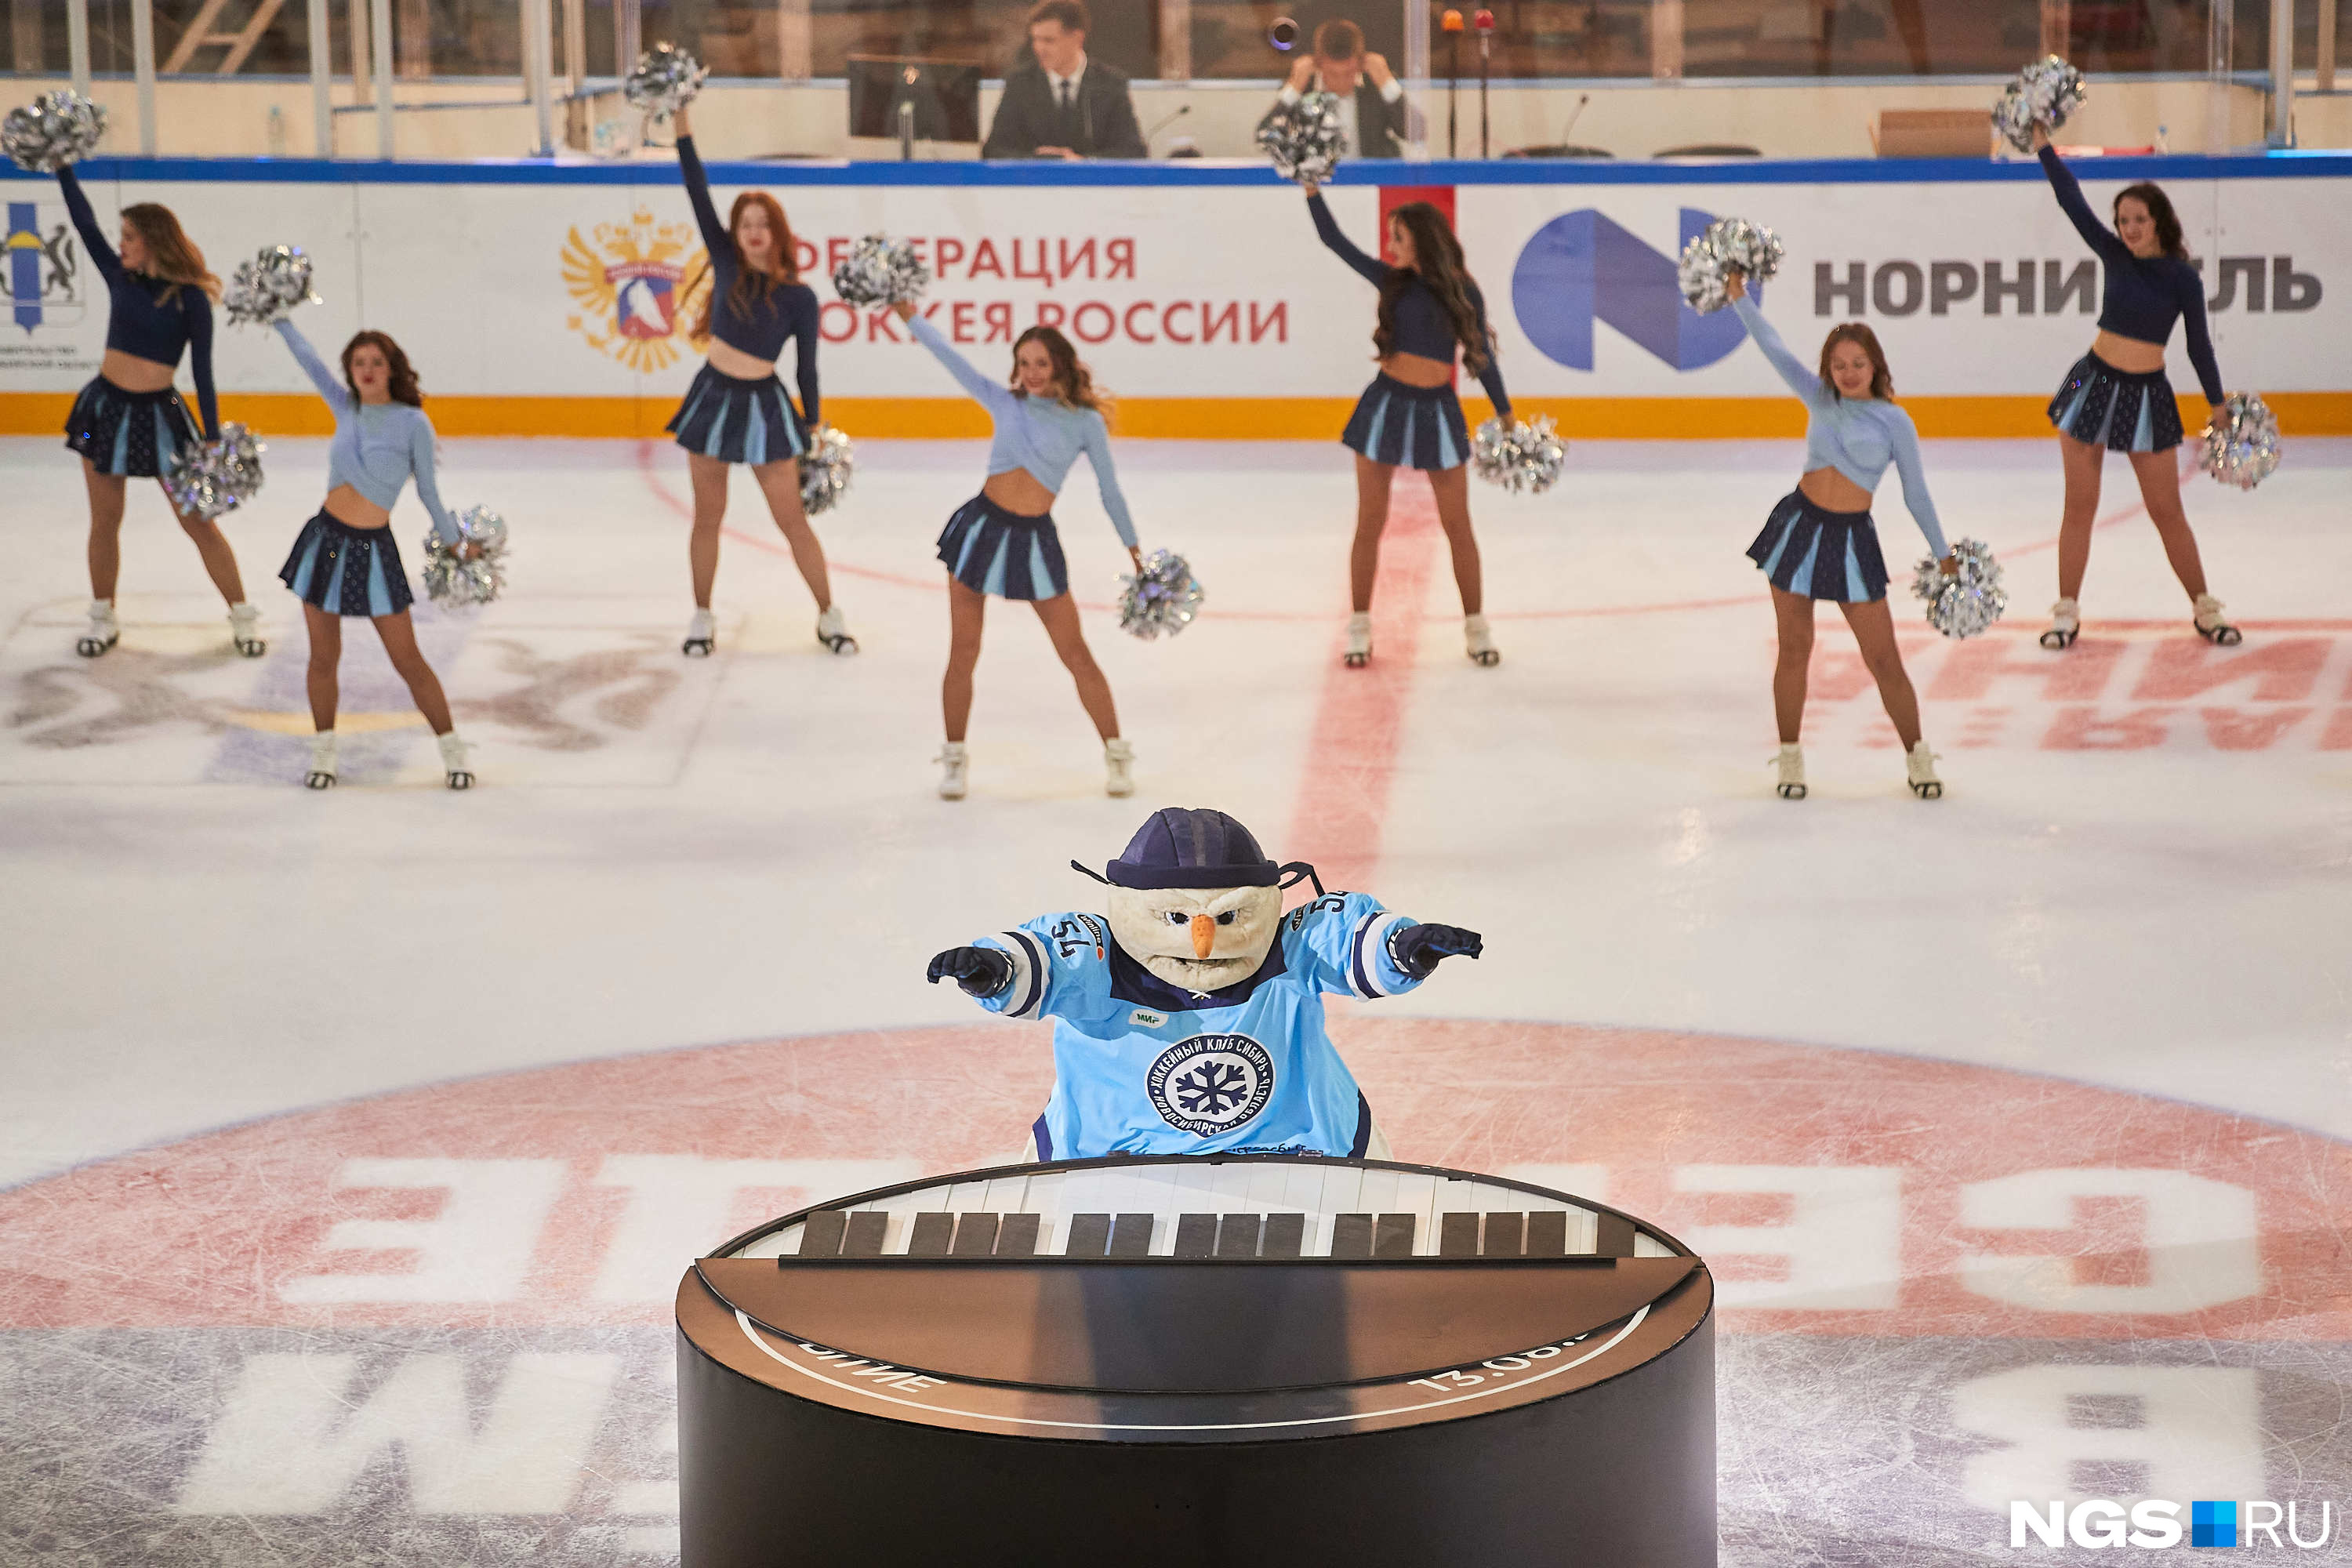 Талисман хоккейной команды «Сибирь» выступил перед жителями Новосибирска. Он сыграл на пианино в виде шайбы